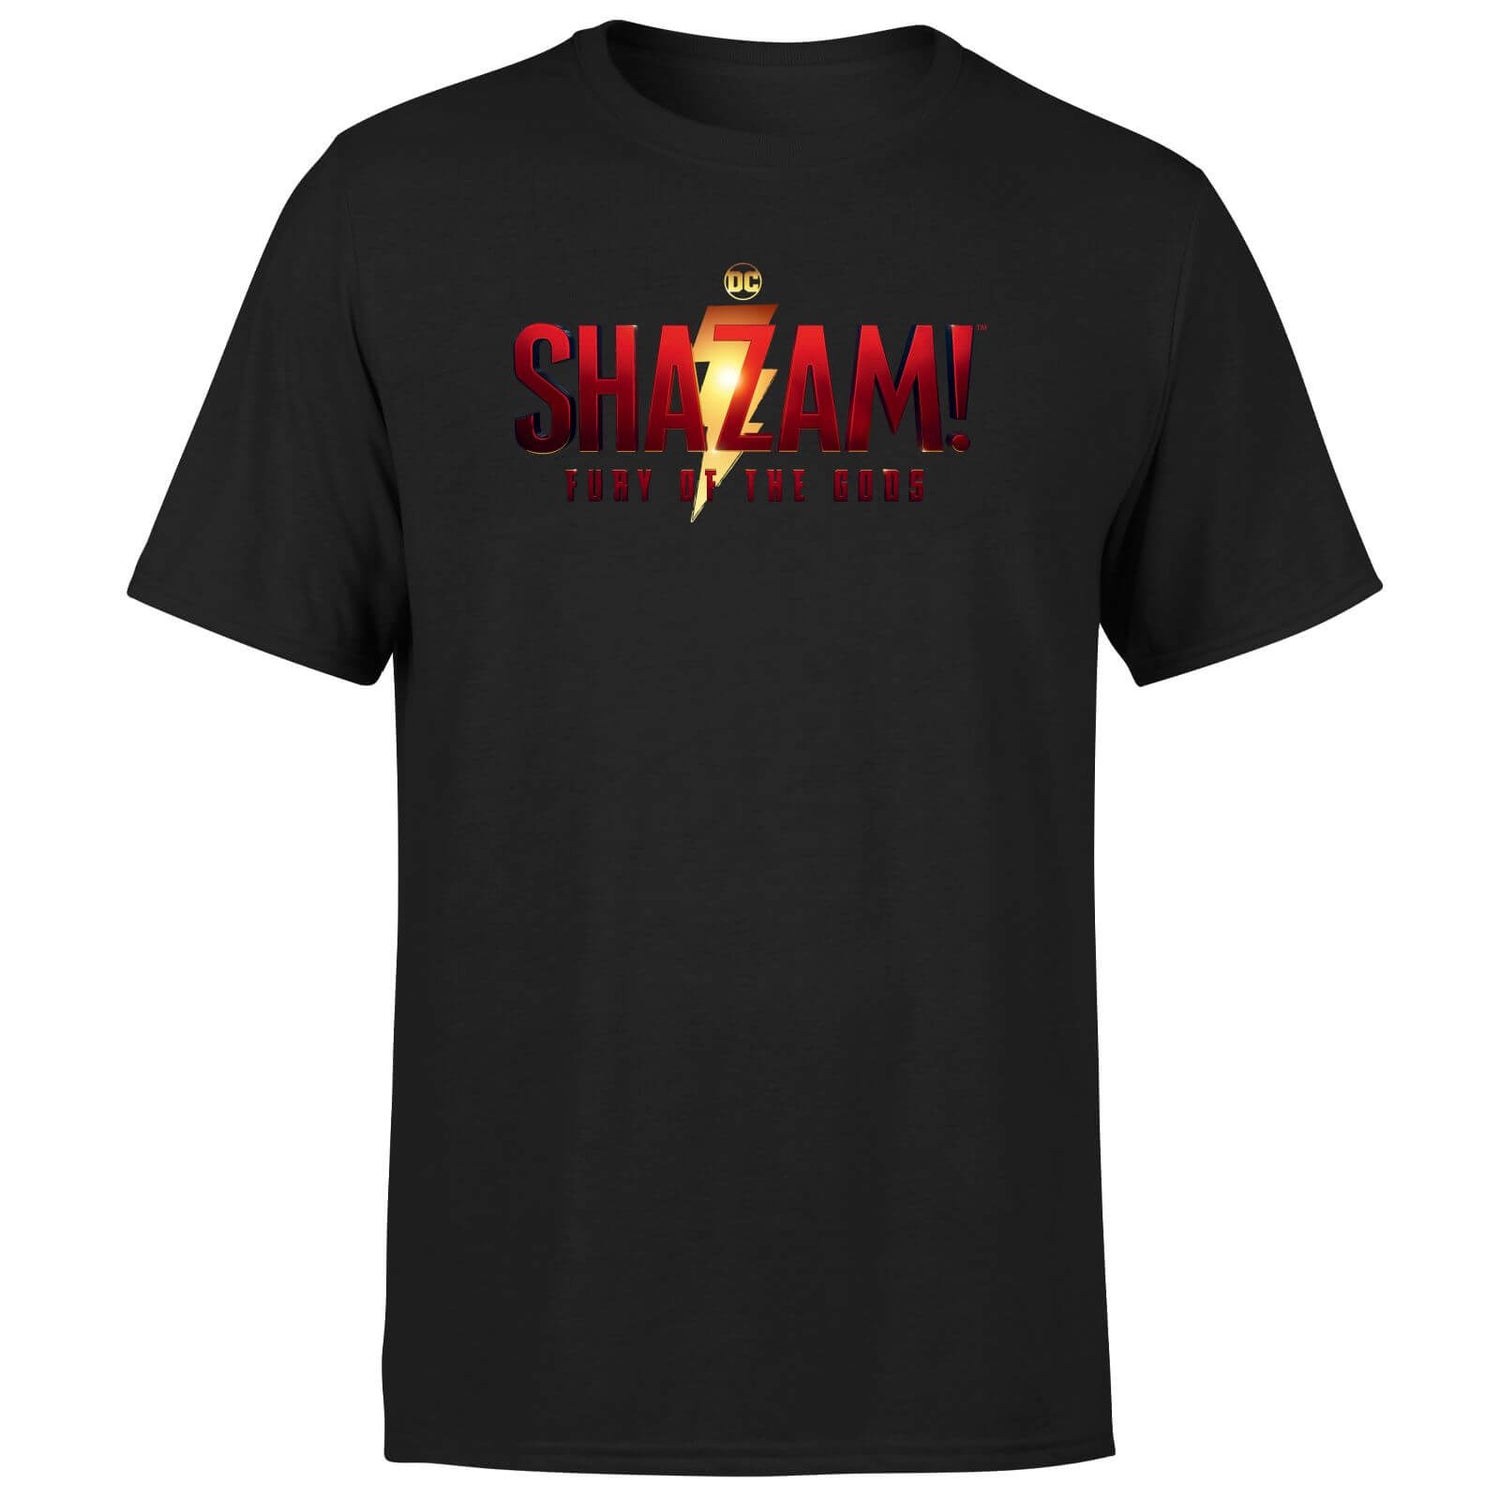 Shazam! Fury of the Gods Logo Unisex T-Shirt - Black